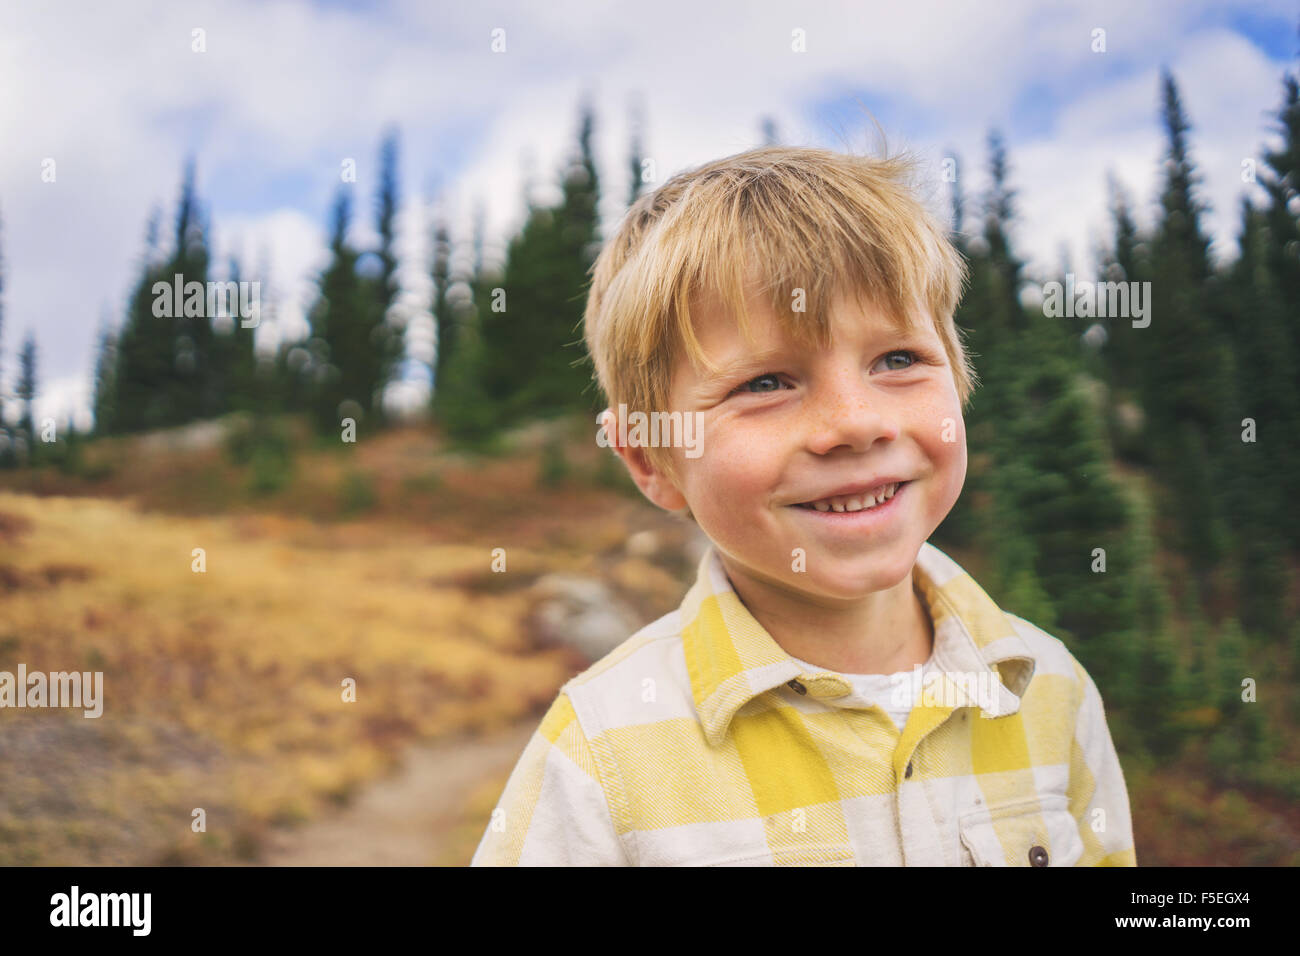 Portrait of a smiling boy outdoors Banque D'Images